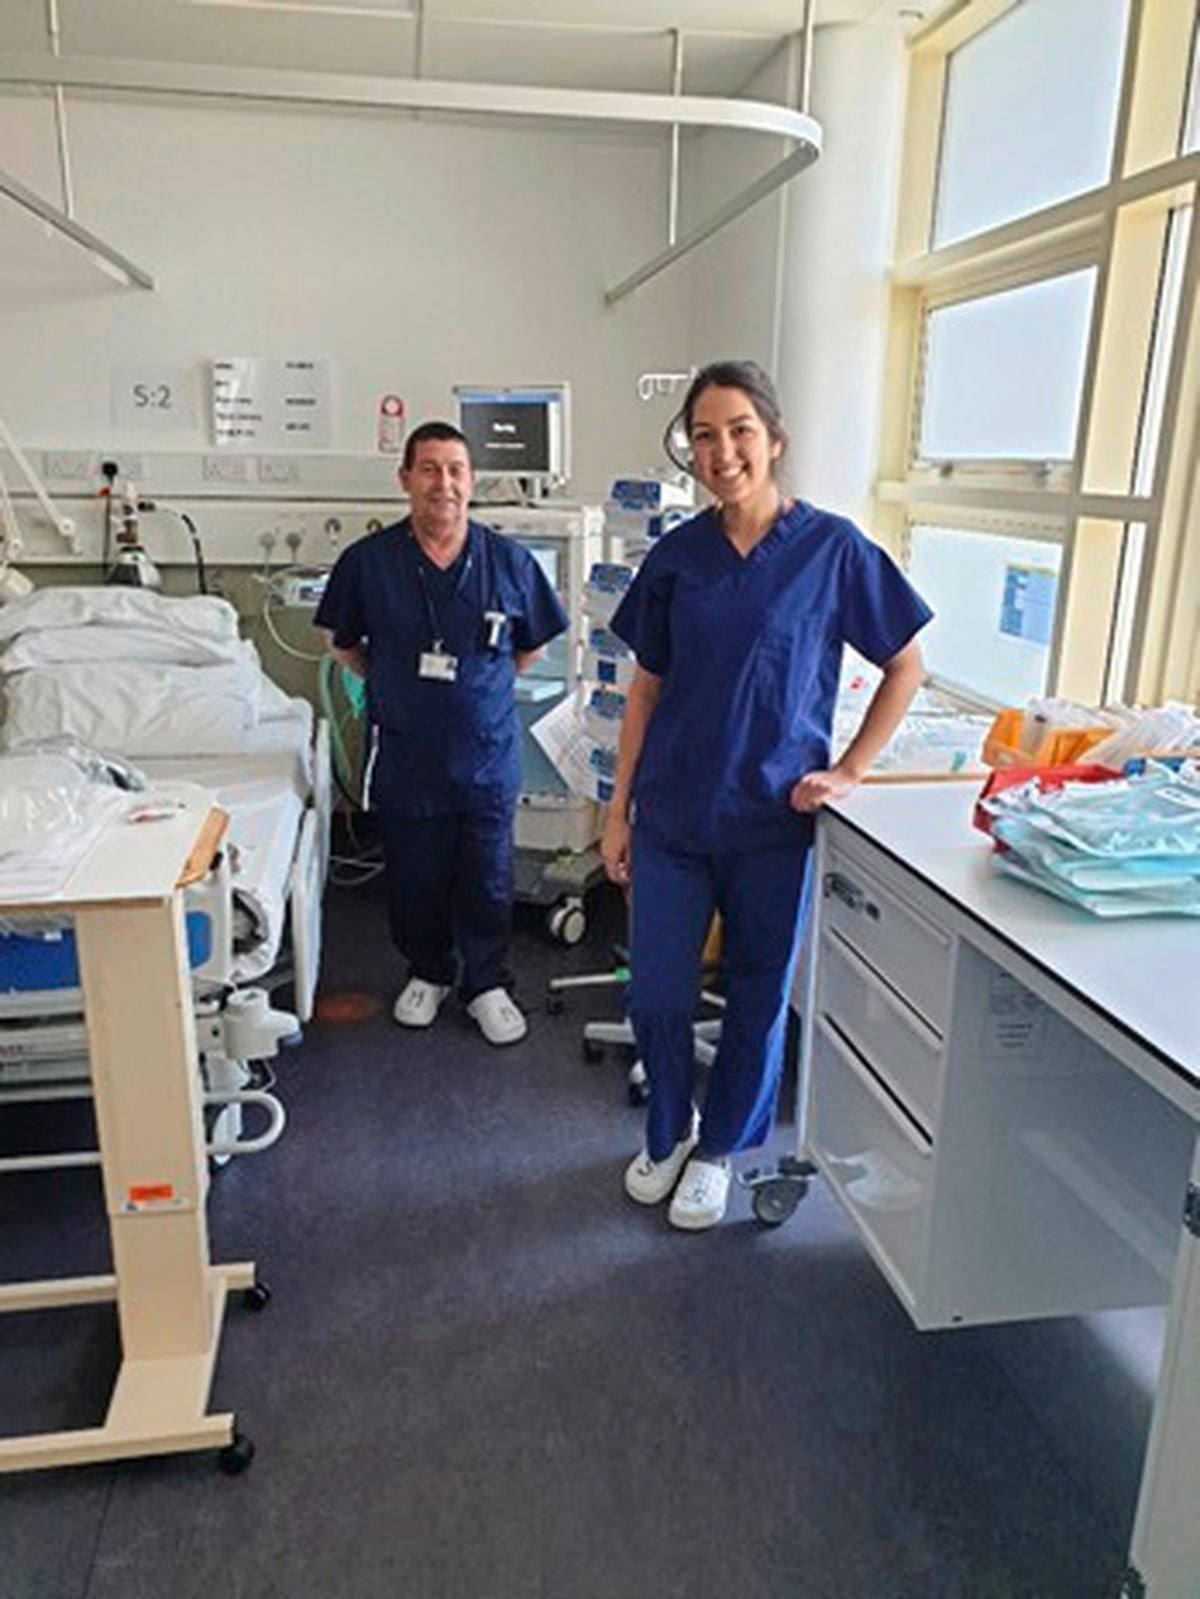 nursing jobs in channel islands uk